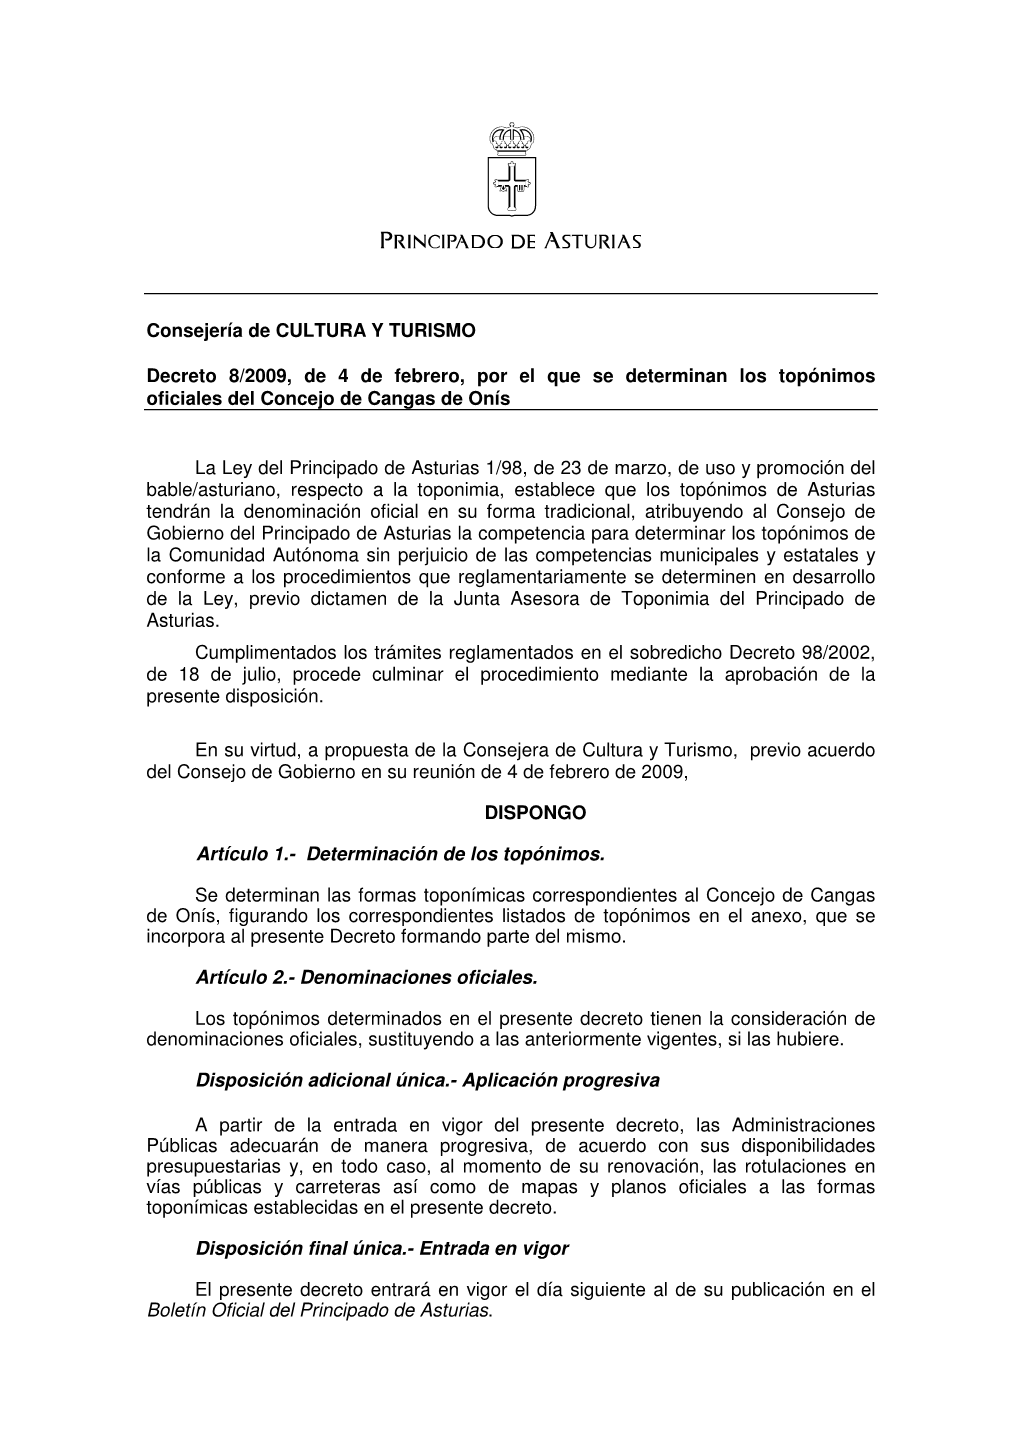 Consejería De CULTURA Y TURISMO Decreto 8/2009, De 4 De Febrero